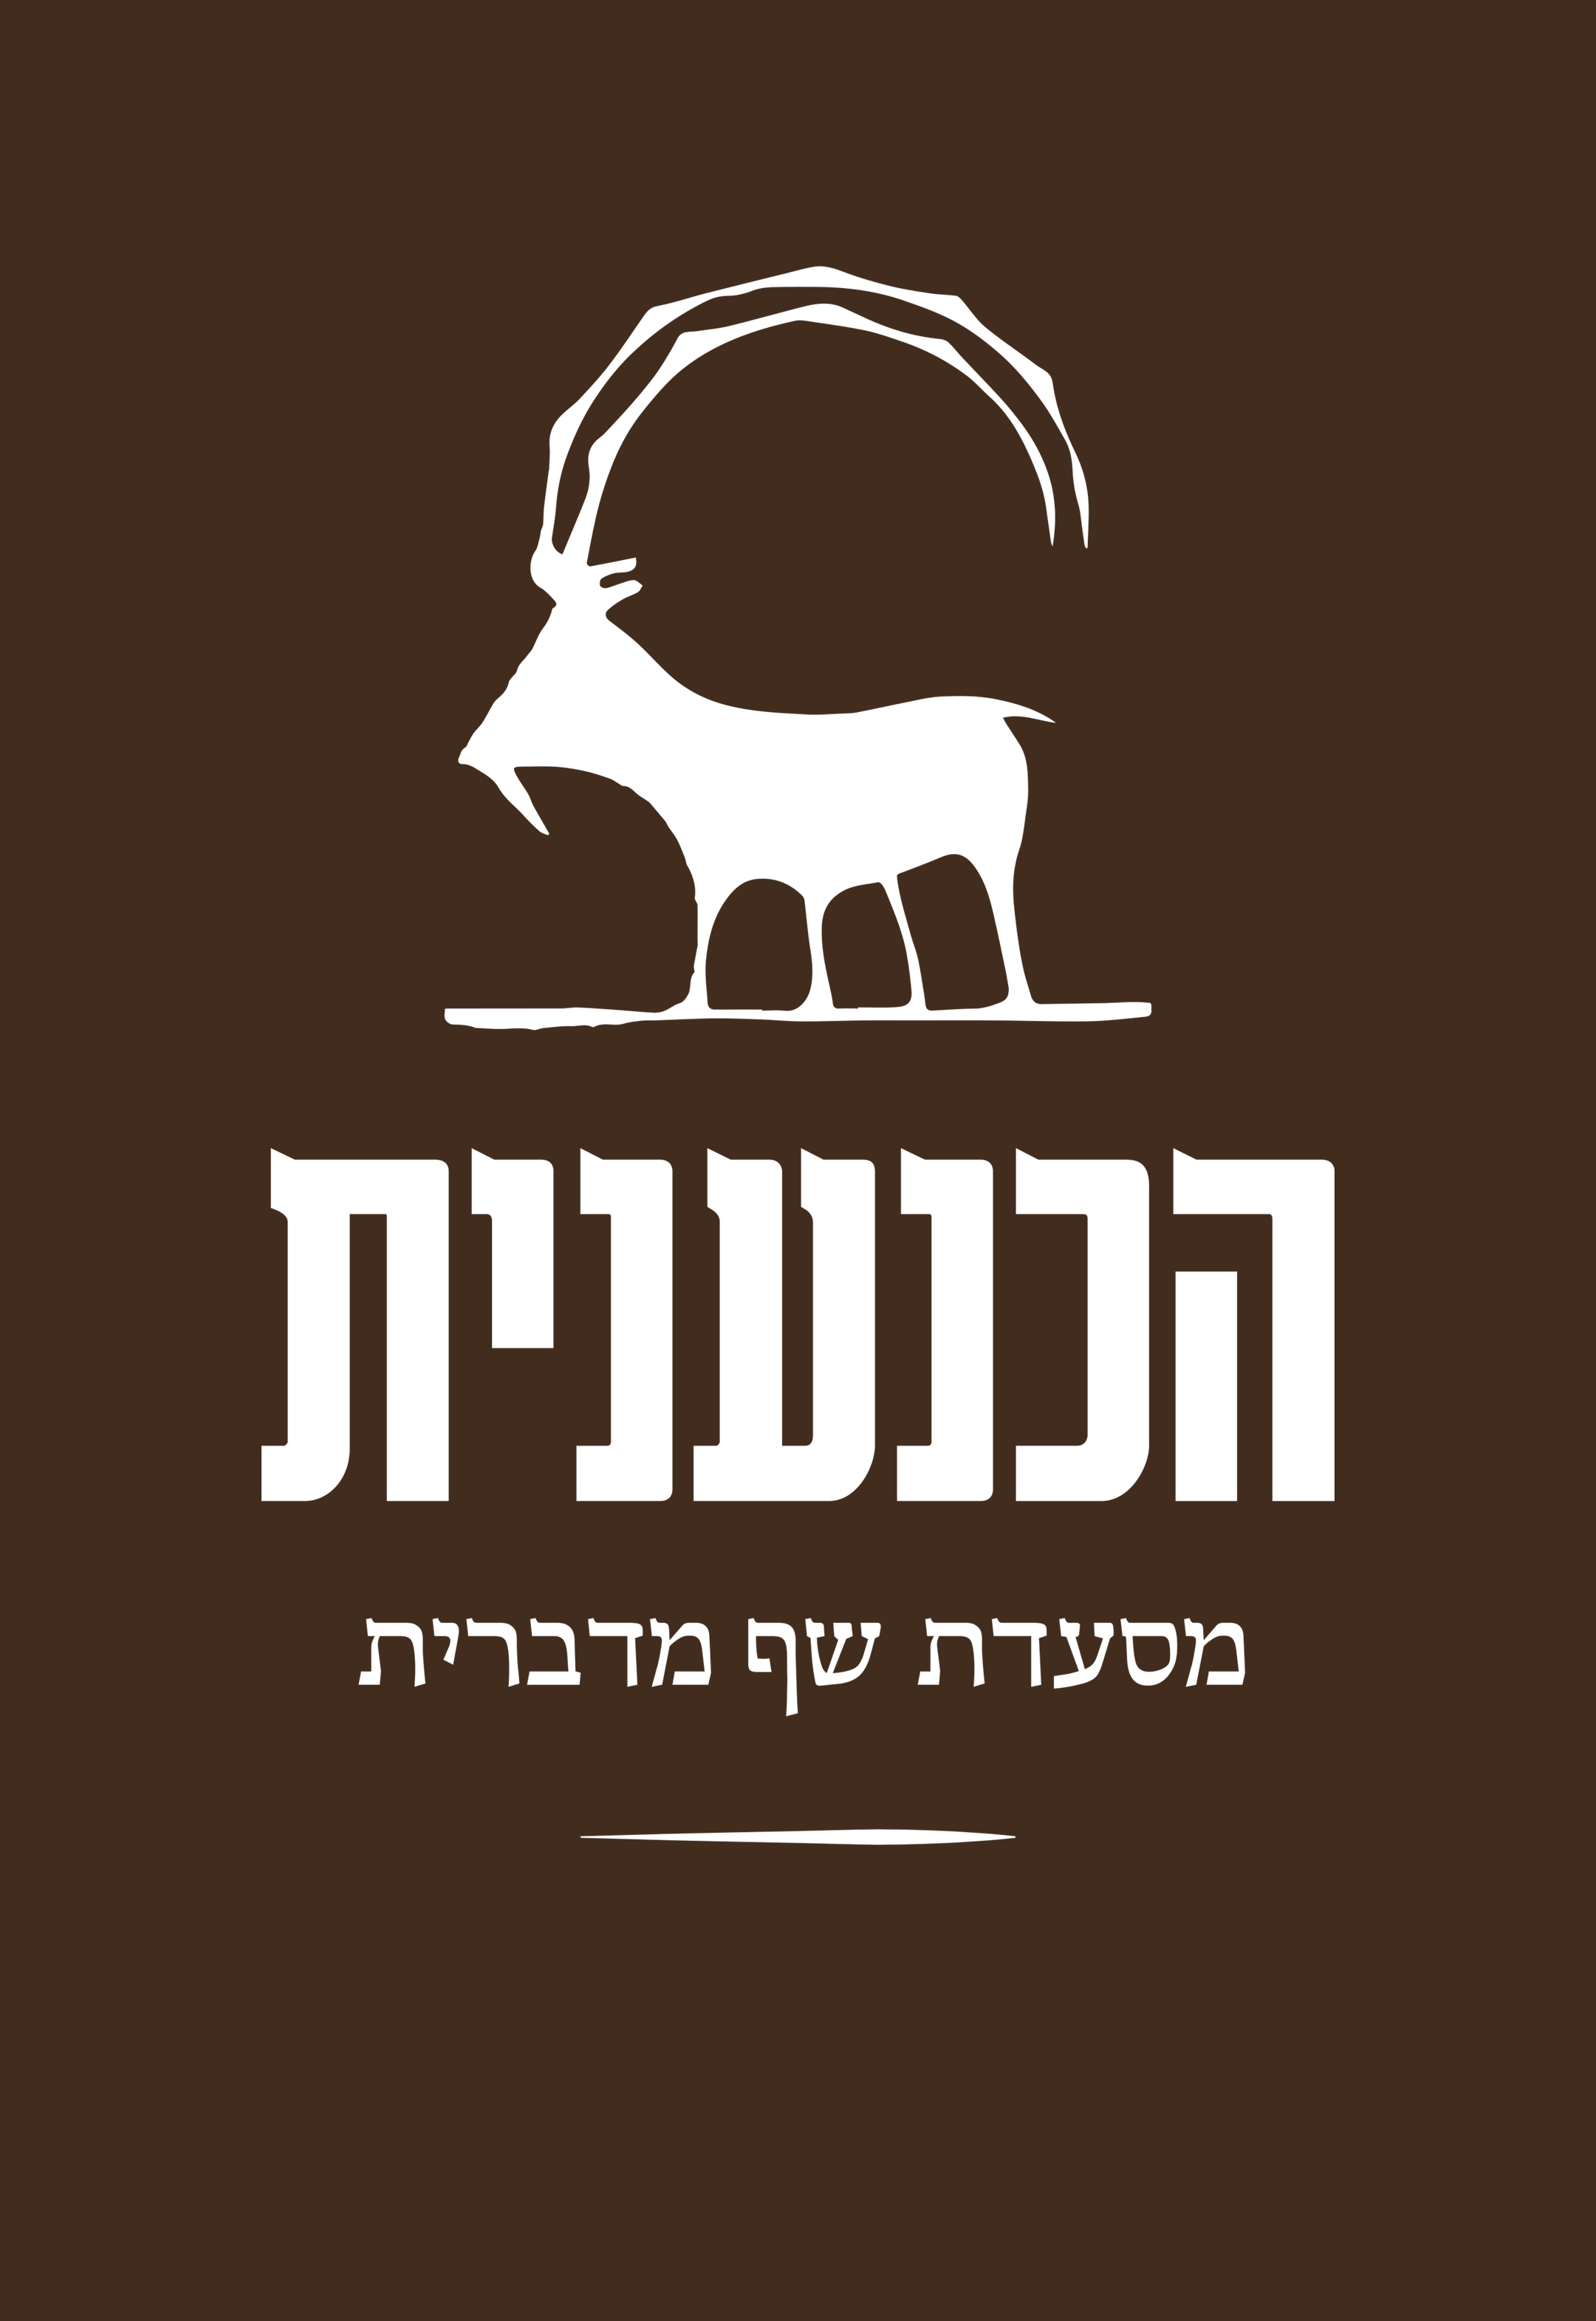 הכנענית לוגו רקע חום